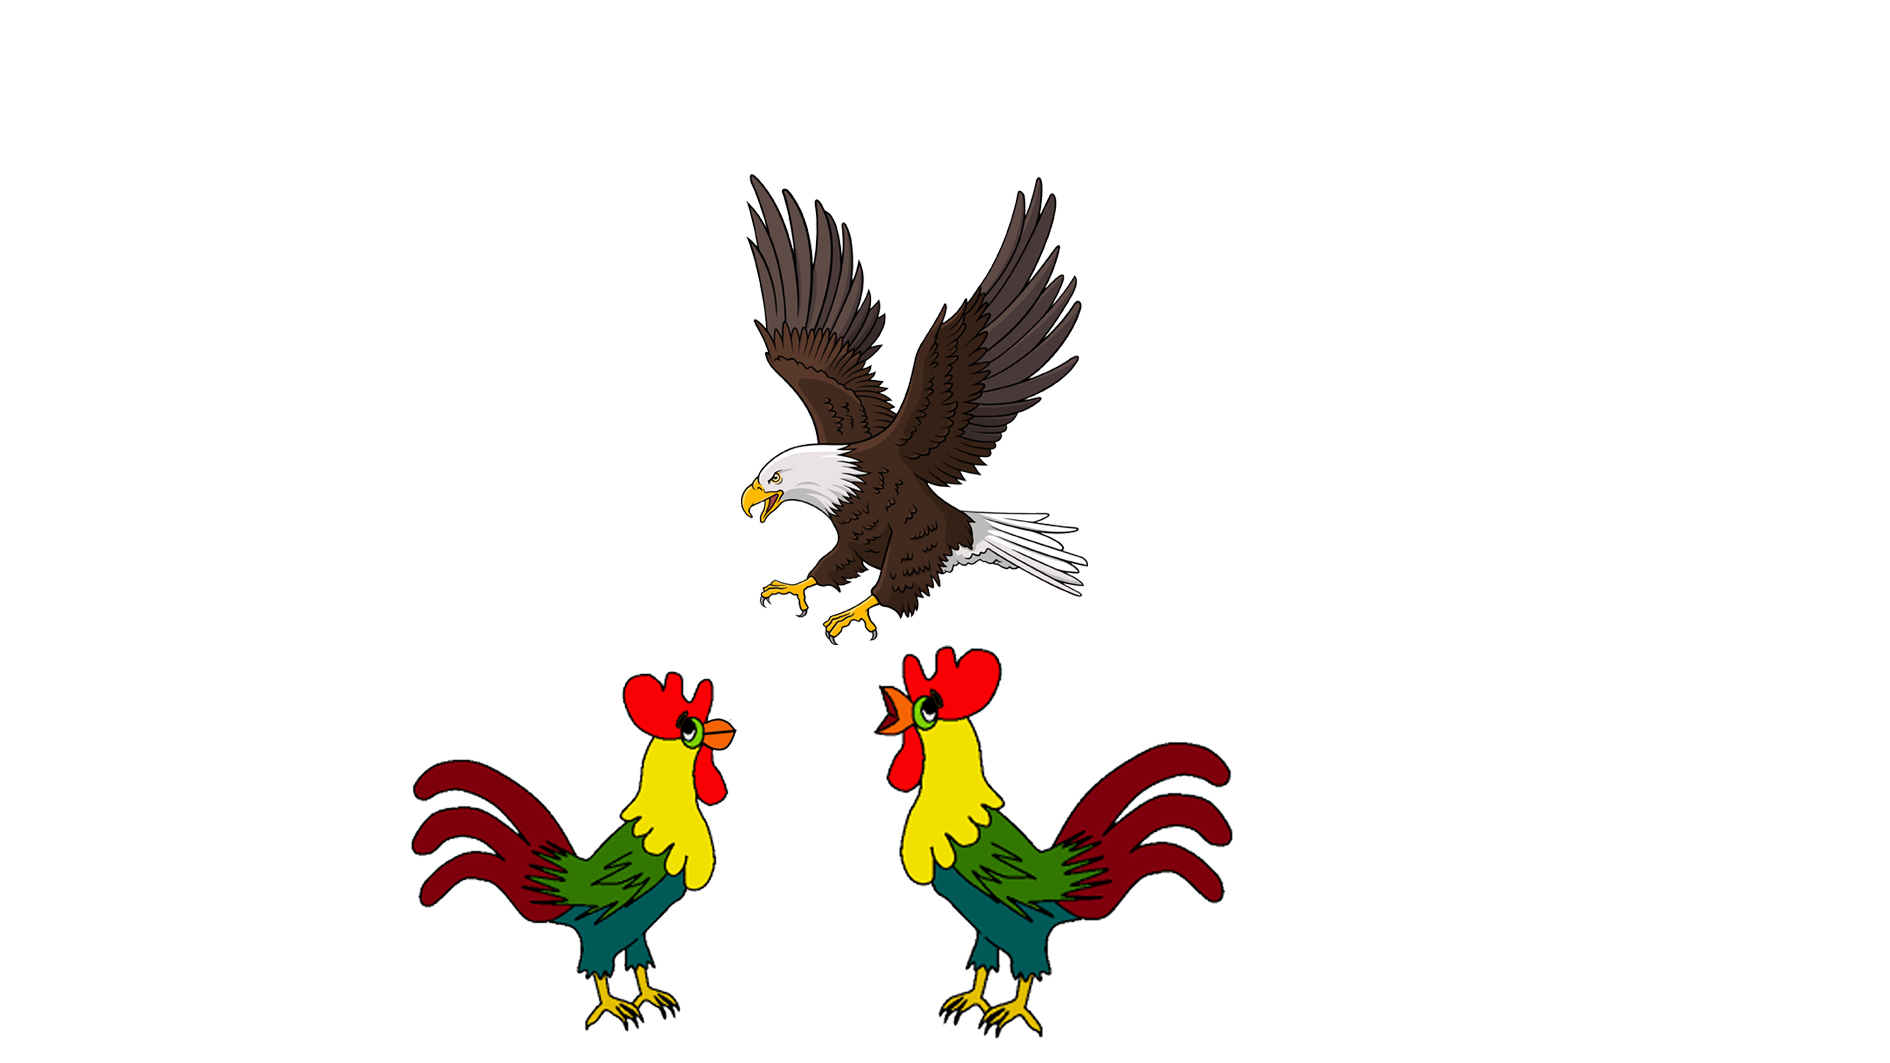 El águila y los gallos, por Belencribs